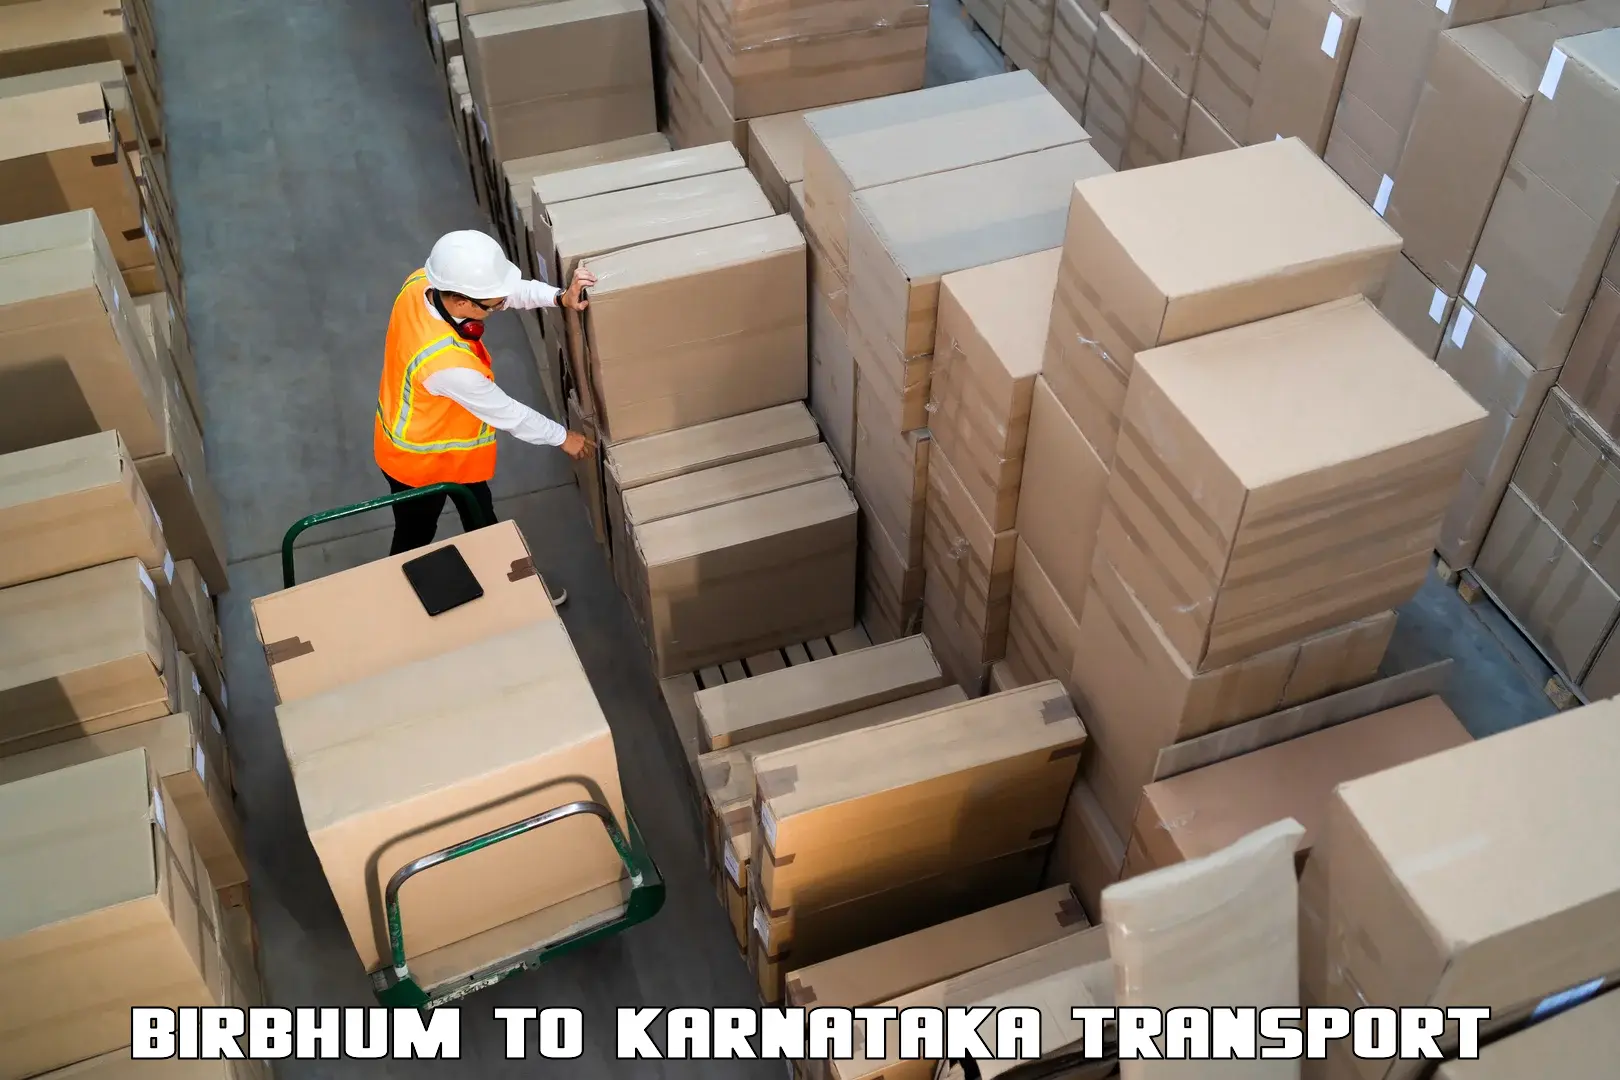 Bike shipping service Birbhum to Kanjarakatte